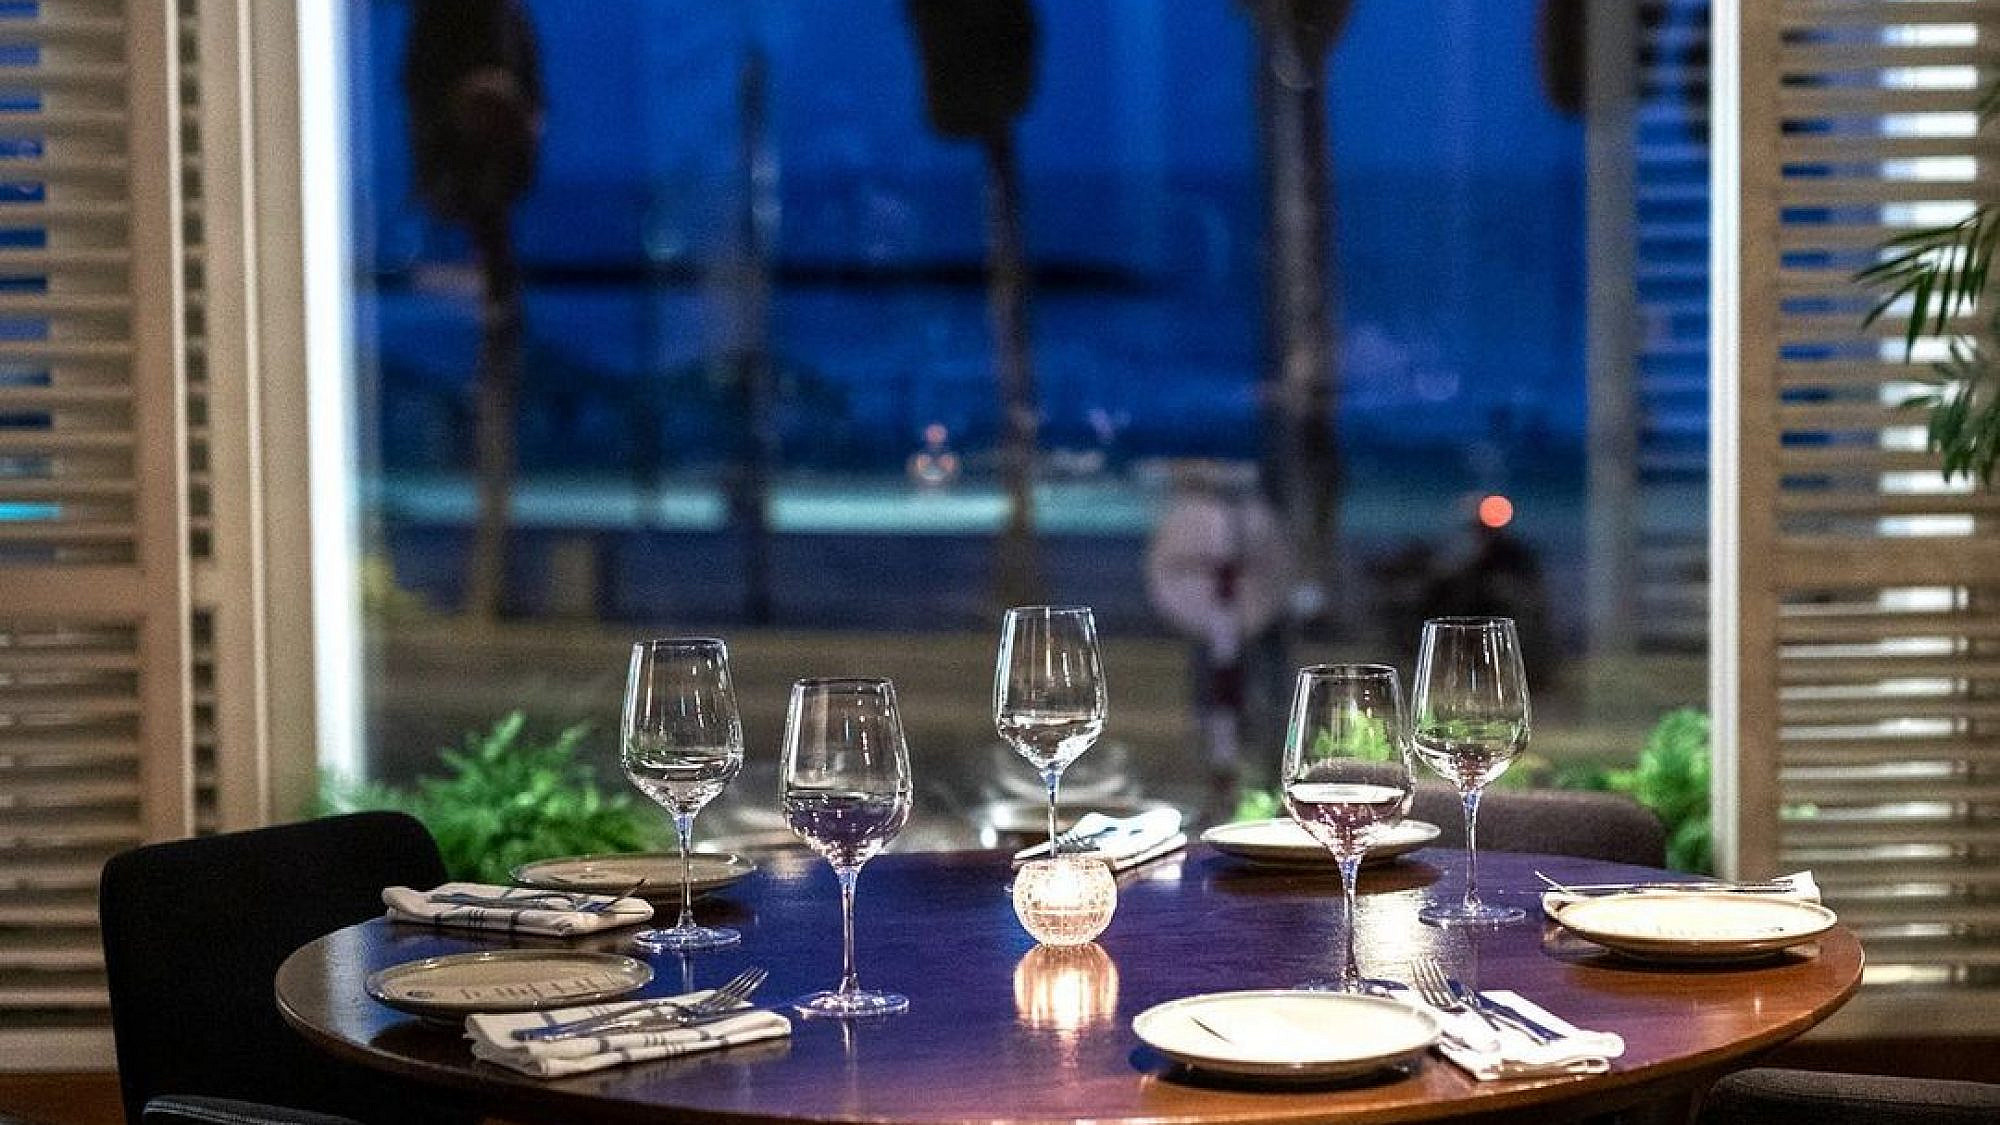 בונוס: אתם יכולים לנסות את השולחן הכי רומנטי בתל אביב. אנימאר (צילום: אינסטגרם/@animartlv)